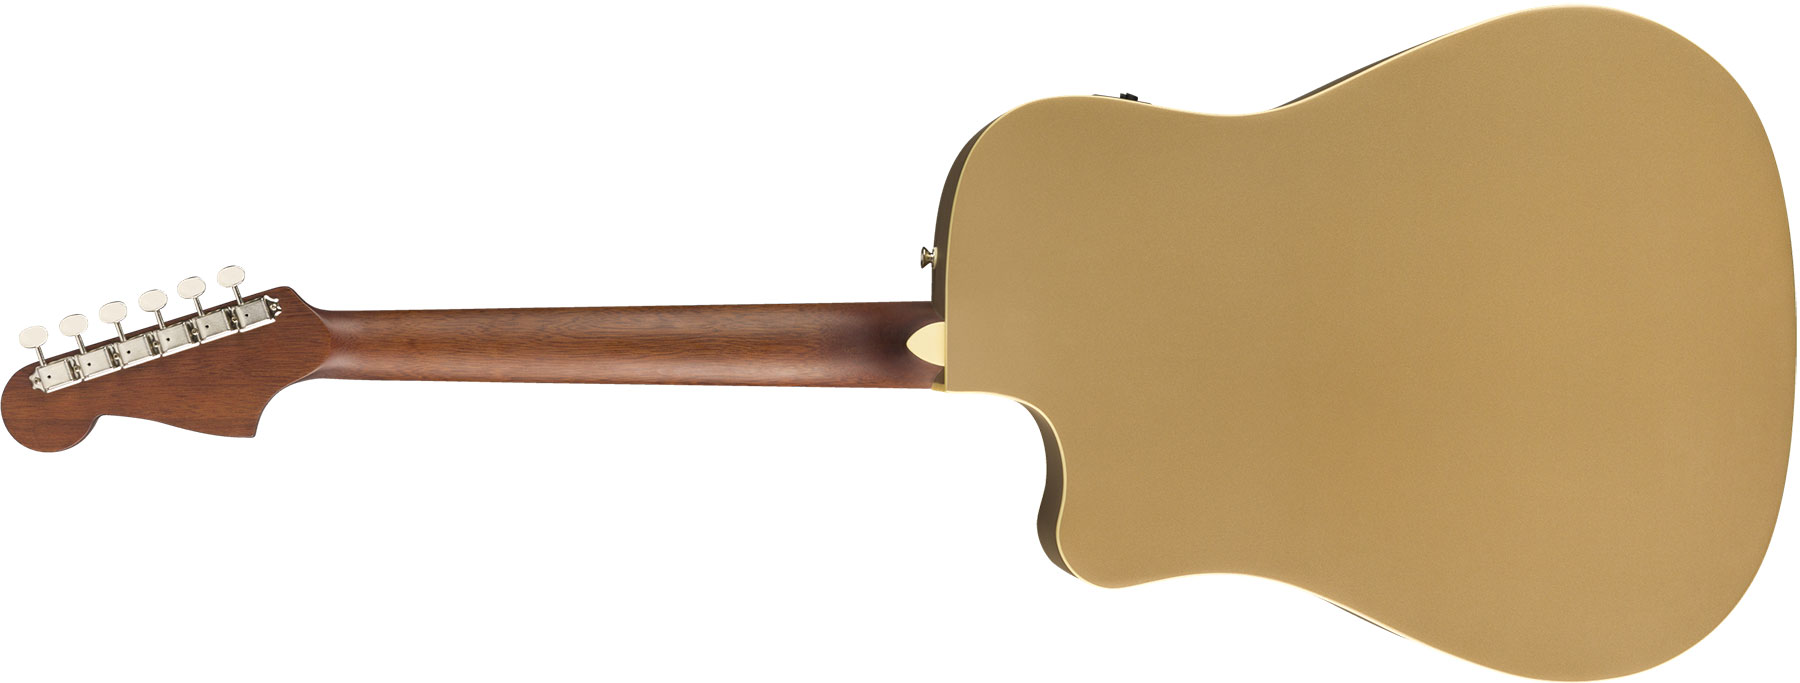 Fender Redondo Player California Dreadnought Cw Epicea Acajou Wal - Bronze Satin - Guitare Electro Acoustique - Variation 1